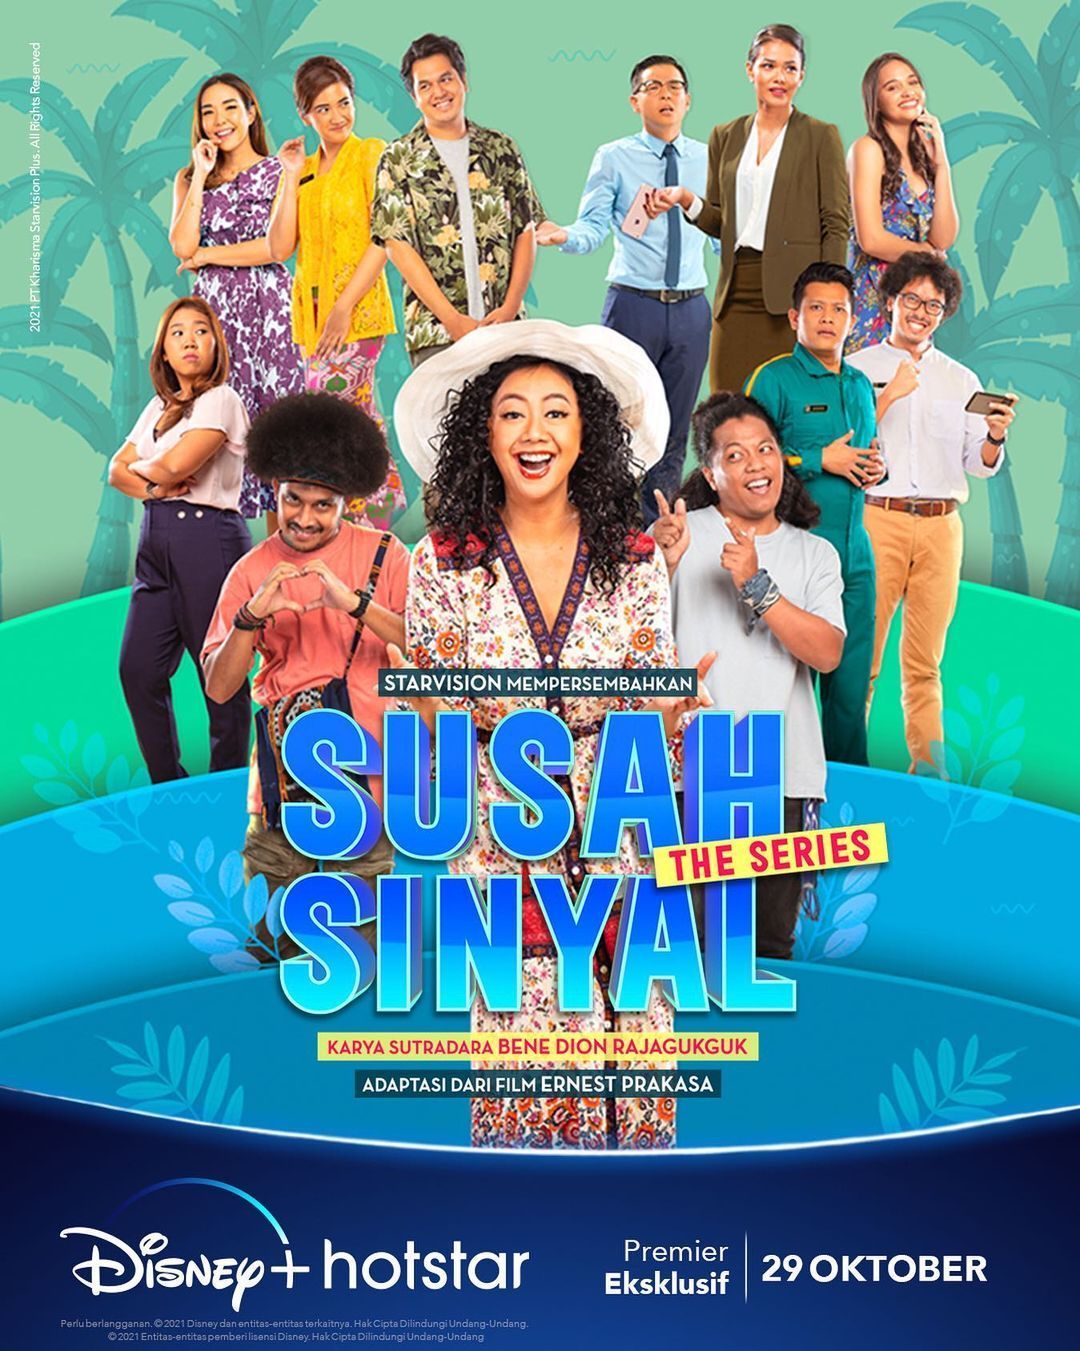 TV ratings for Susah Sinyal: The Series in India. Disney+ TV series